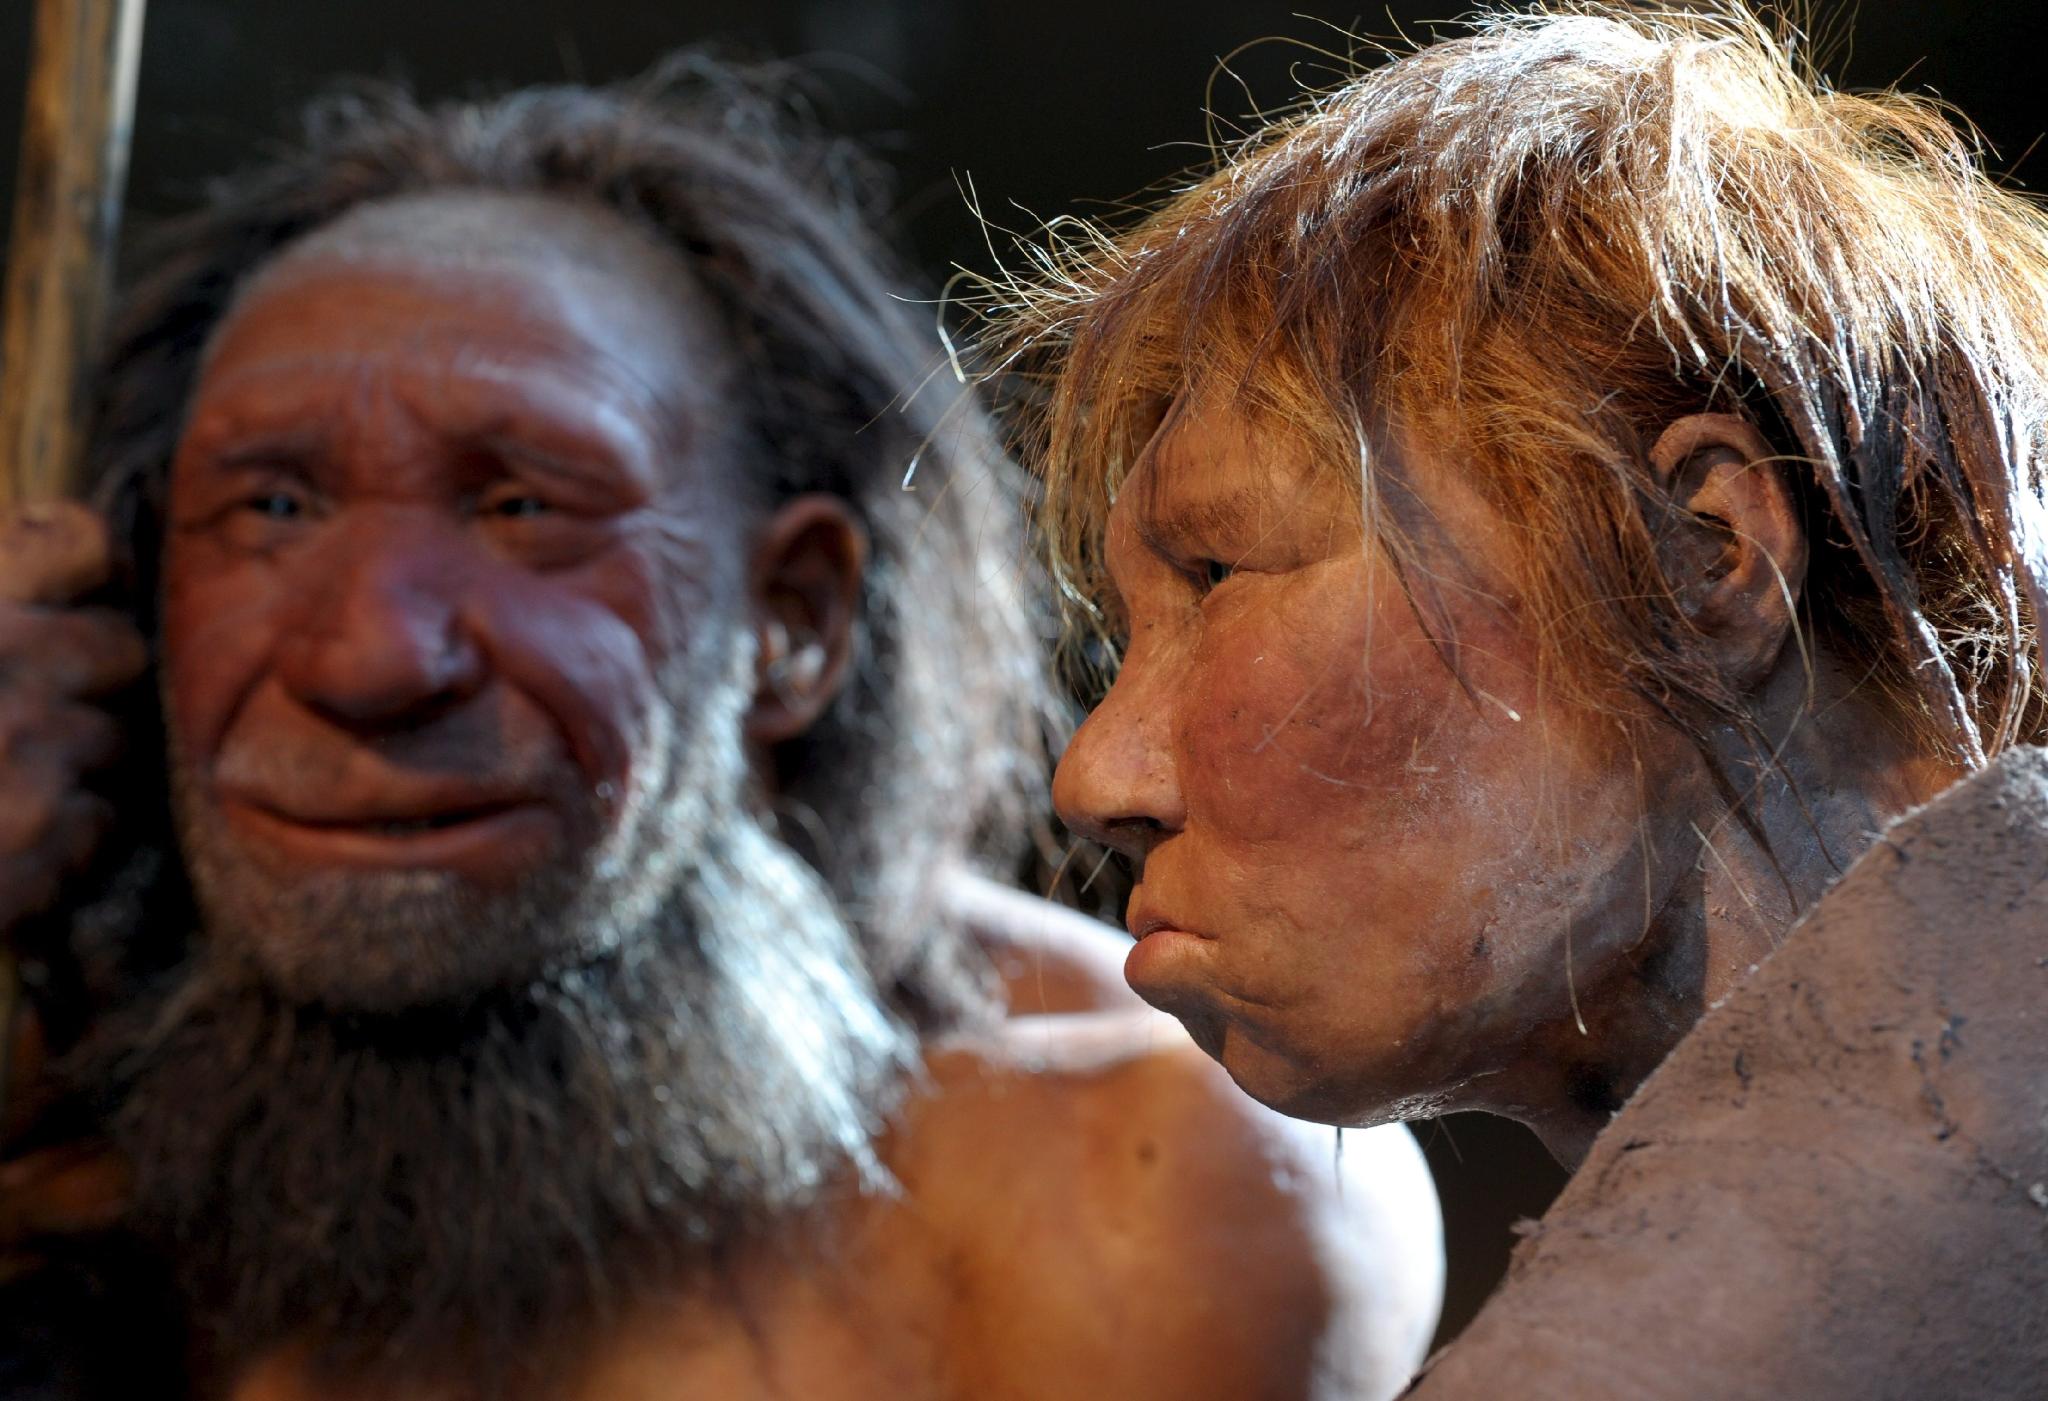 Pikaia gracilens е прародител и на човека (снимка на модели на неандерталци в музея Метман, Германия)